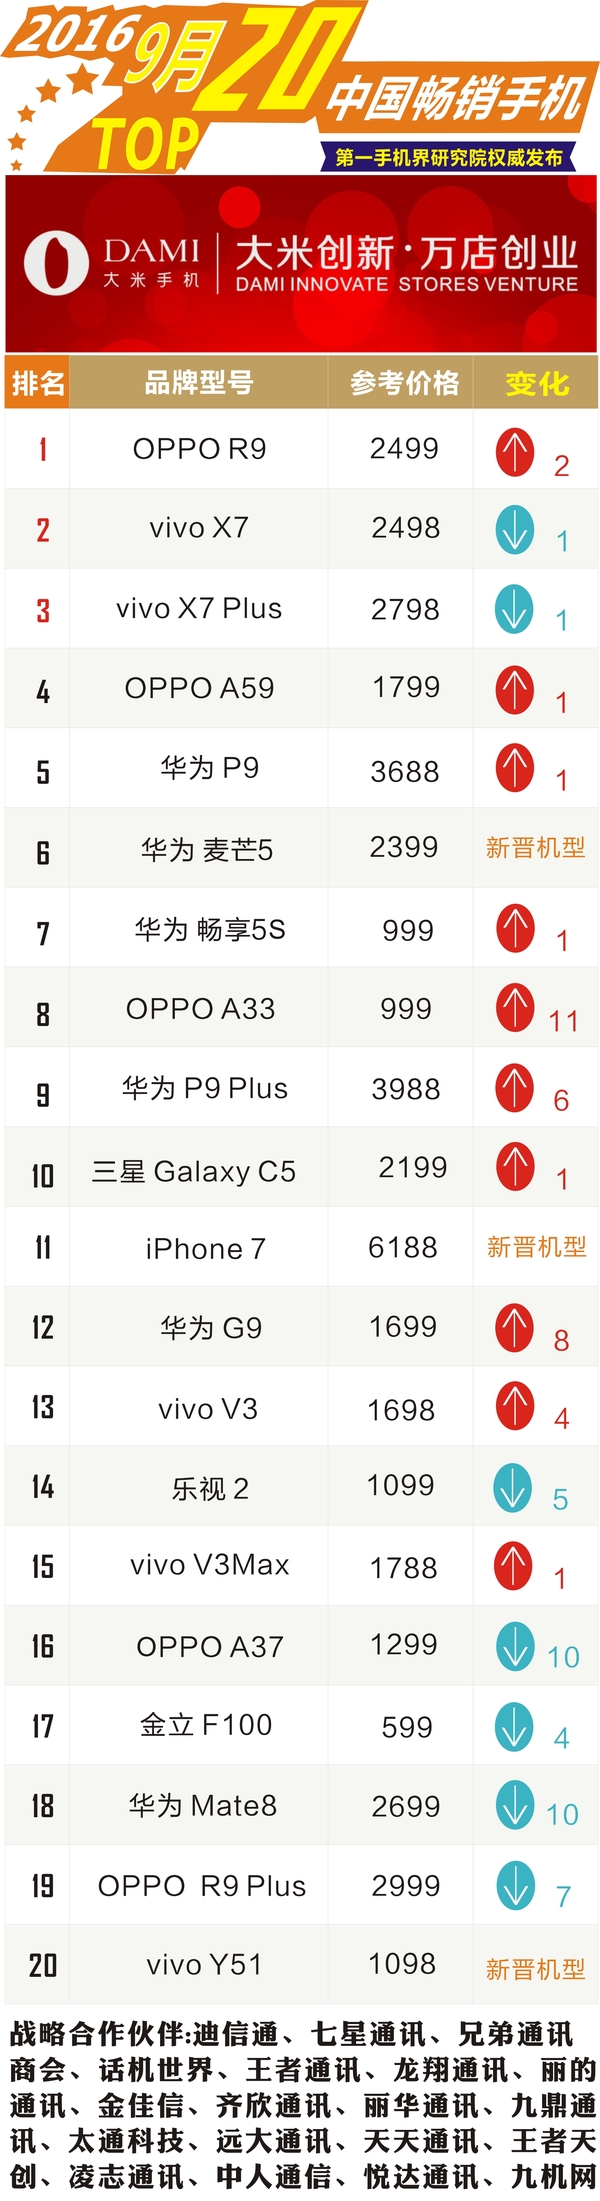 二零一六年九月份我国热销手机上TOP20：vivo X7卫冕冠军不成功